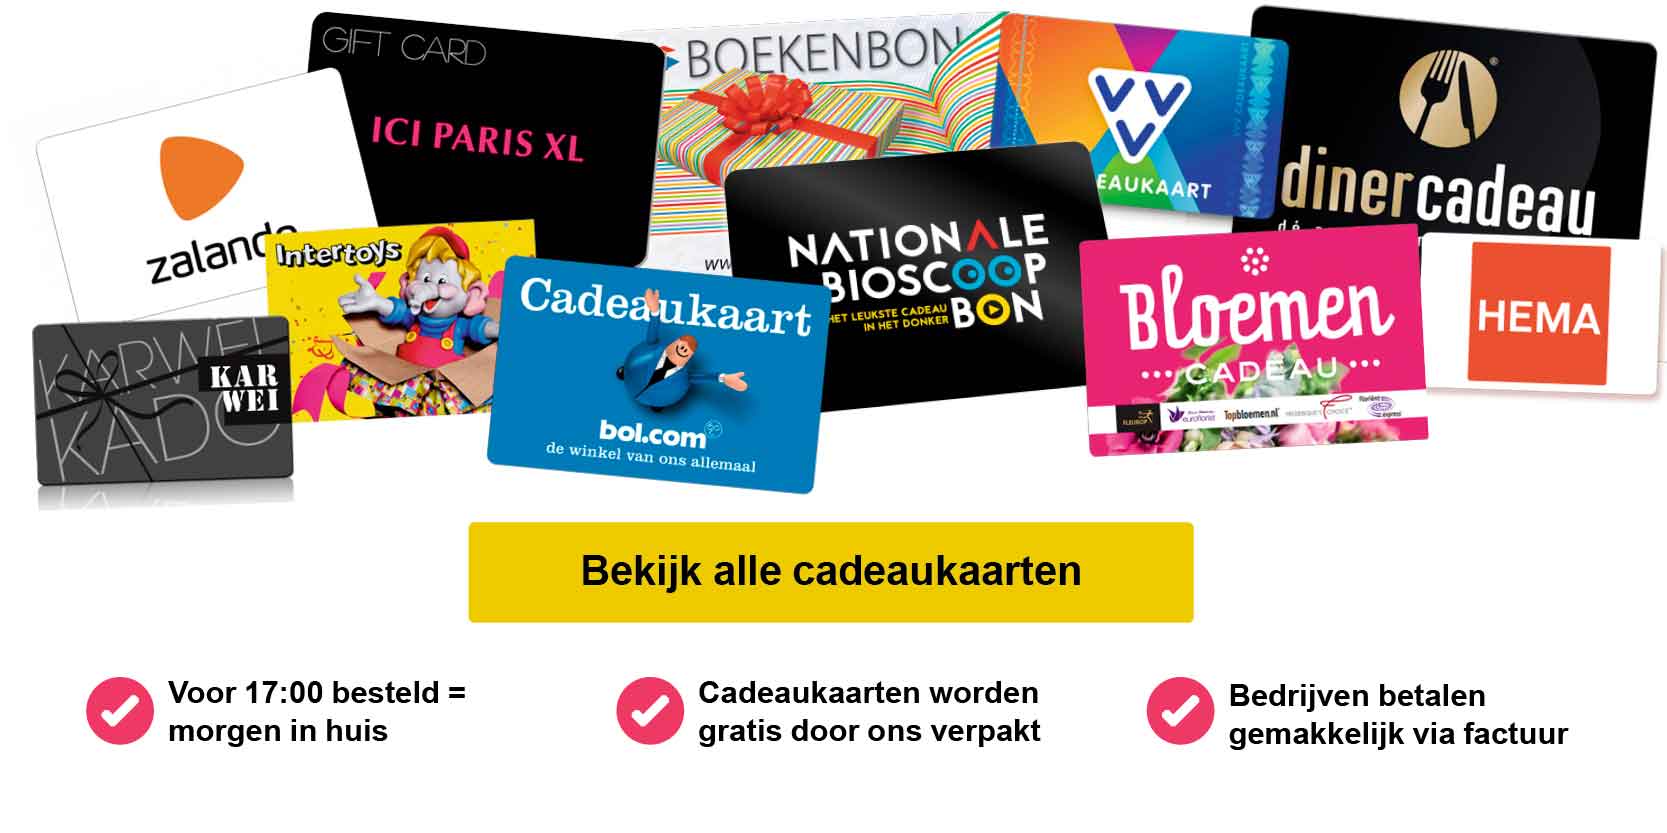 negatief niezen BES VVV cadeaukaart online kopen? | VVV giftcards| Ruim te besteden